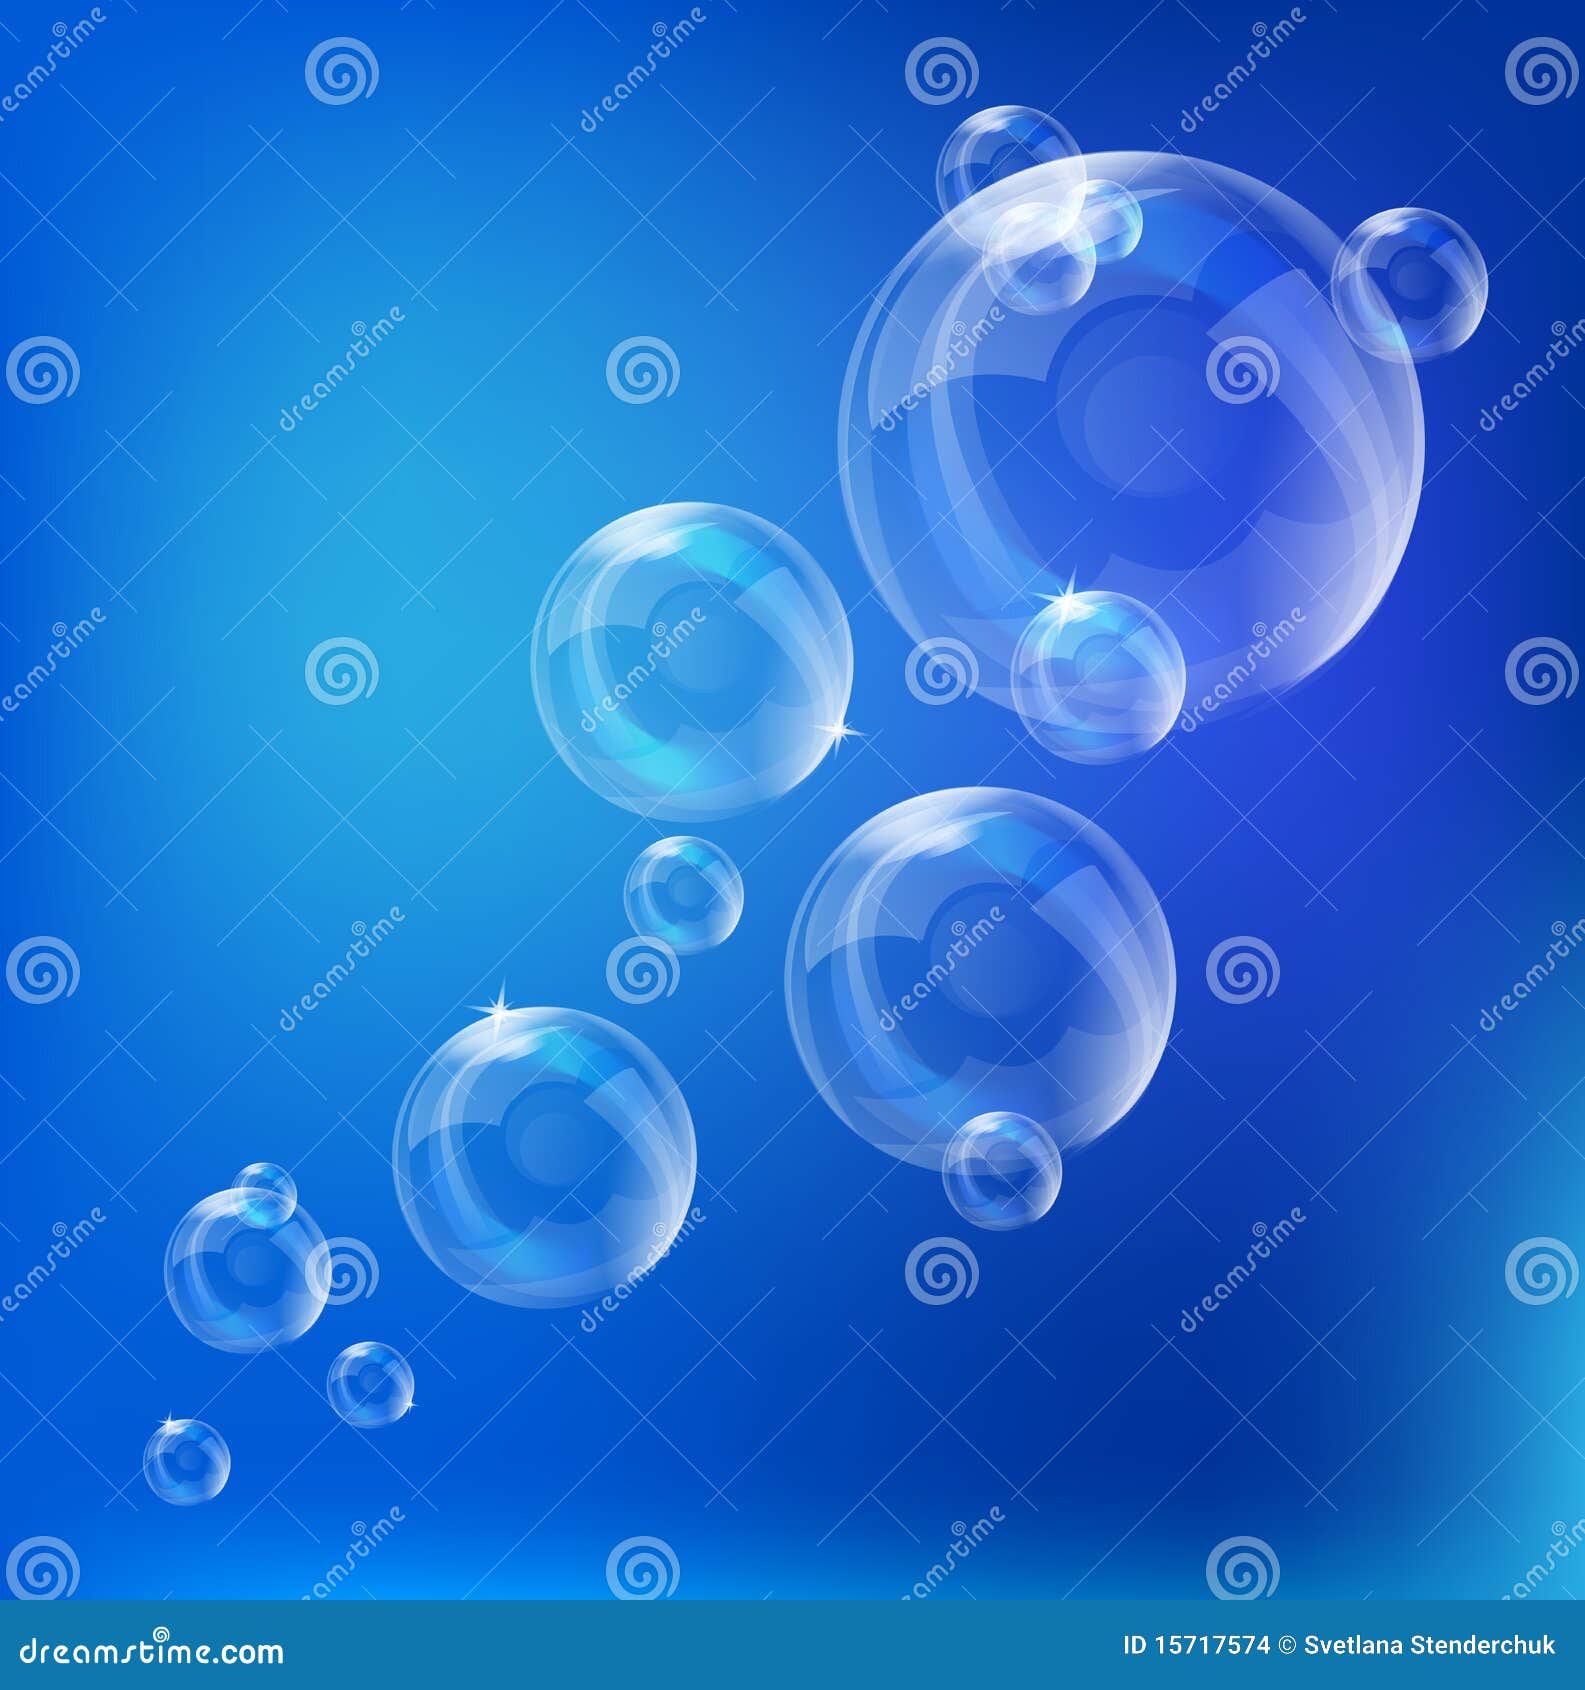 soap bubbles - 